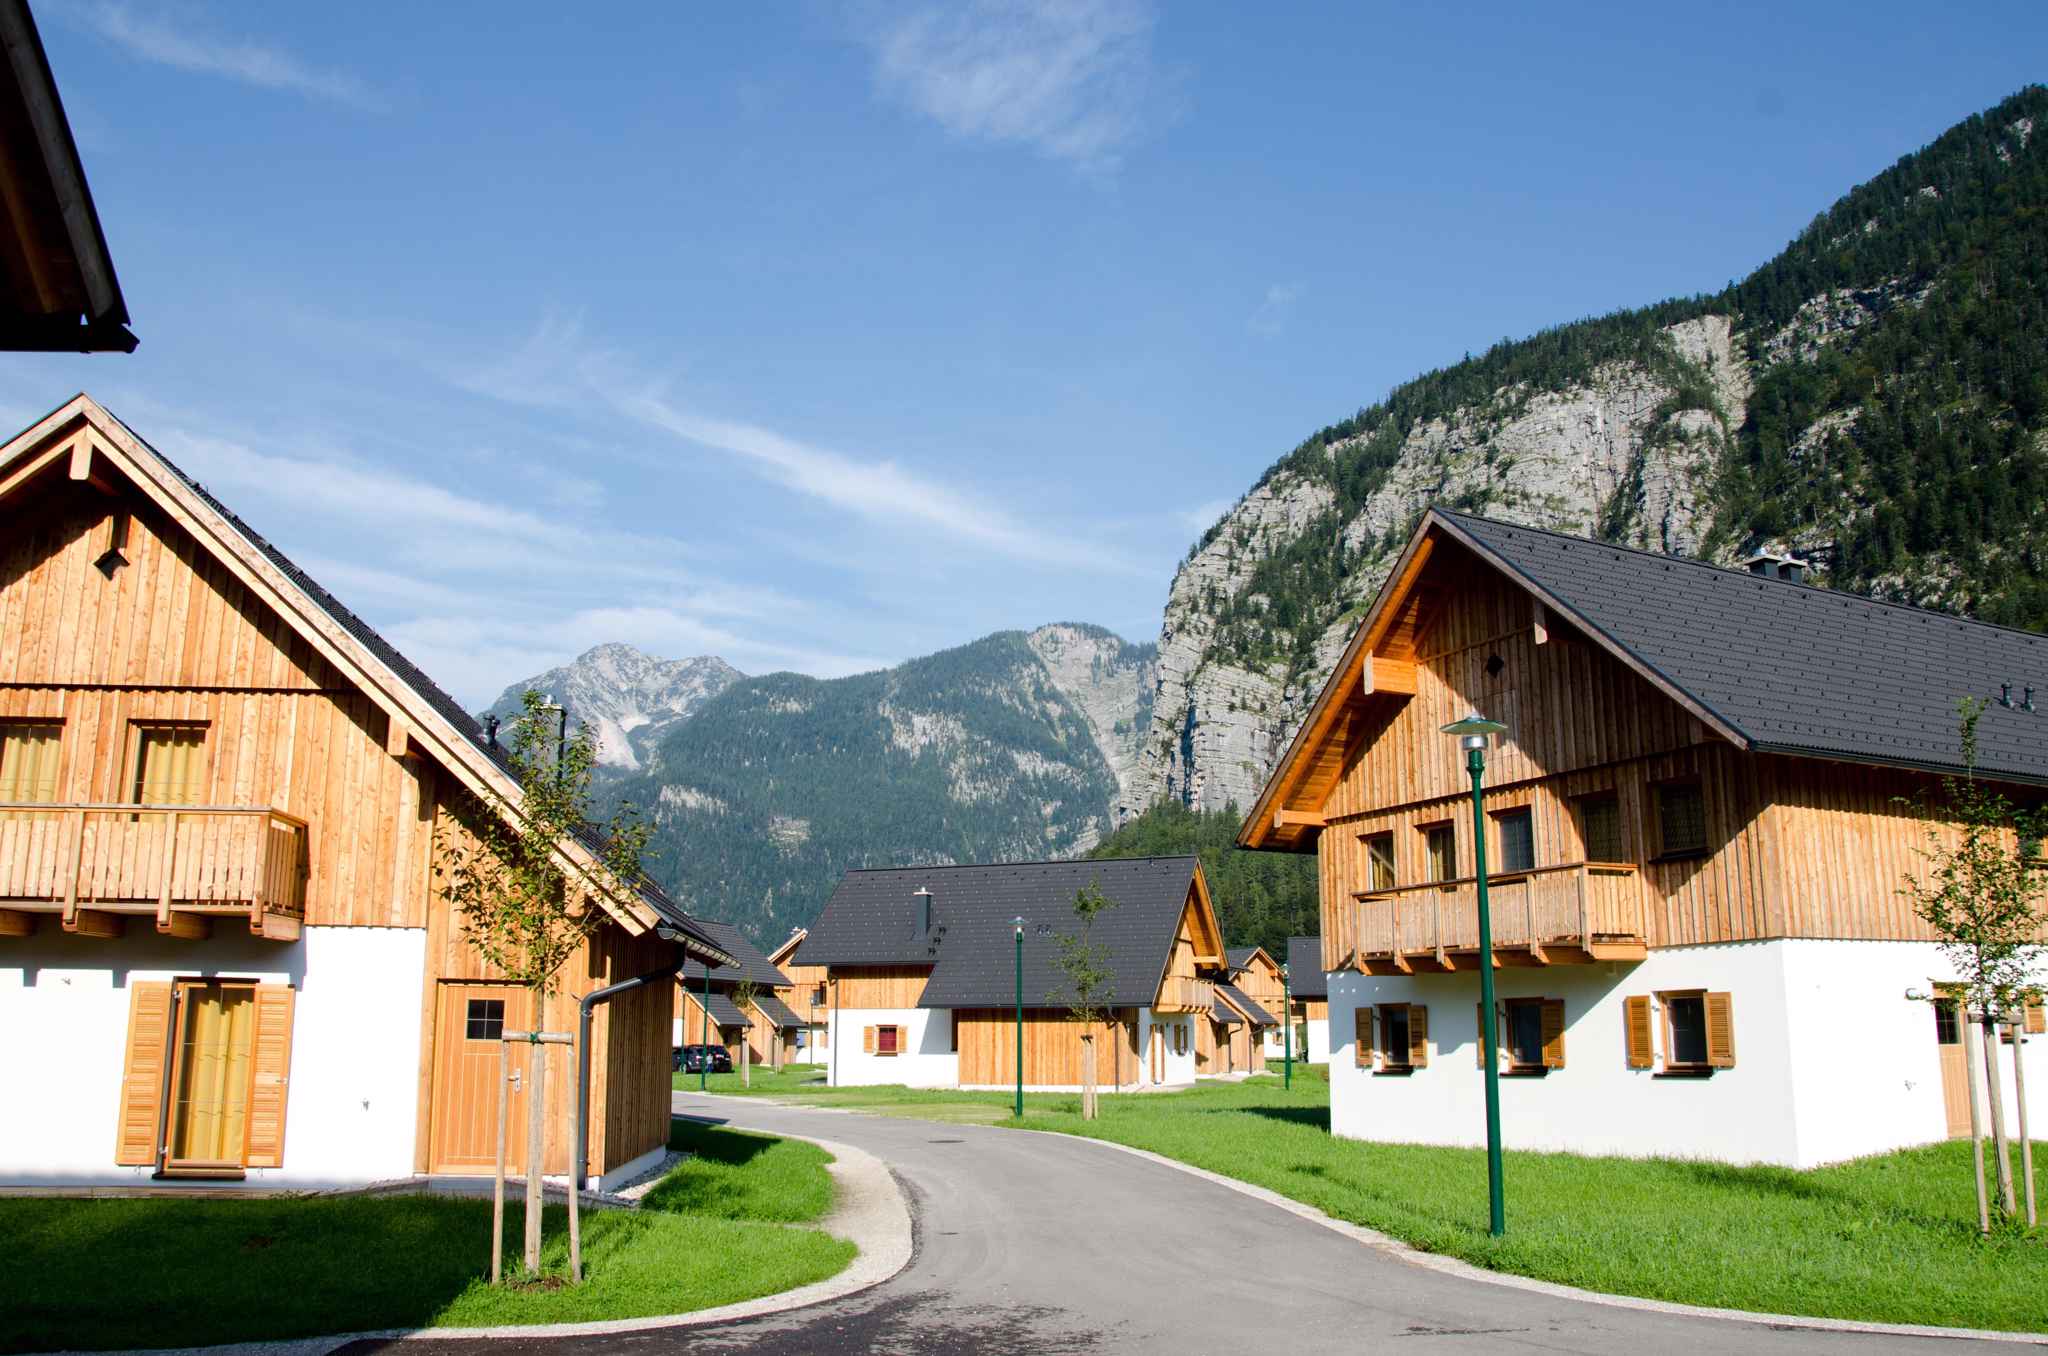 Ferienhaus mit Hallenbad, Wellness und Kinderspiel Ferienhaus in Österreich